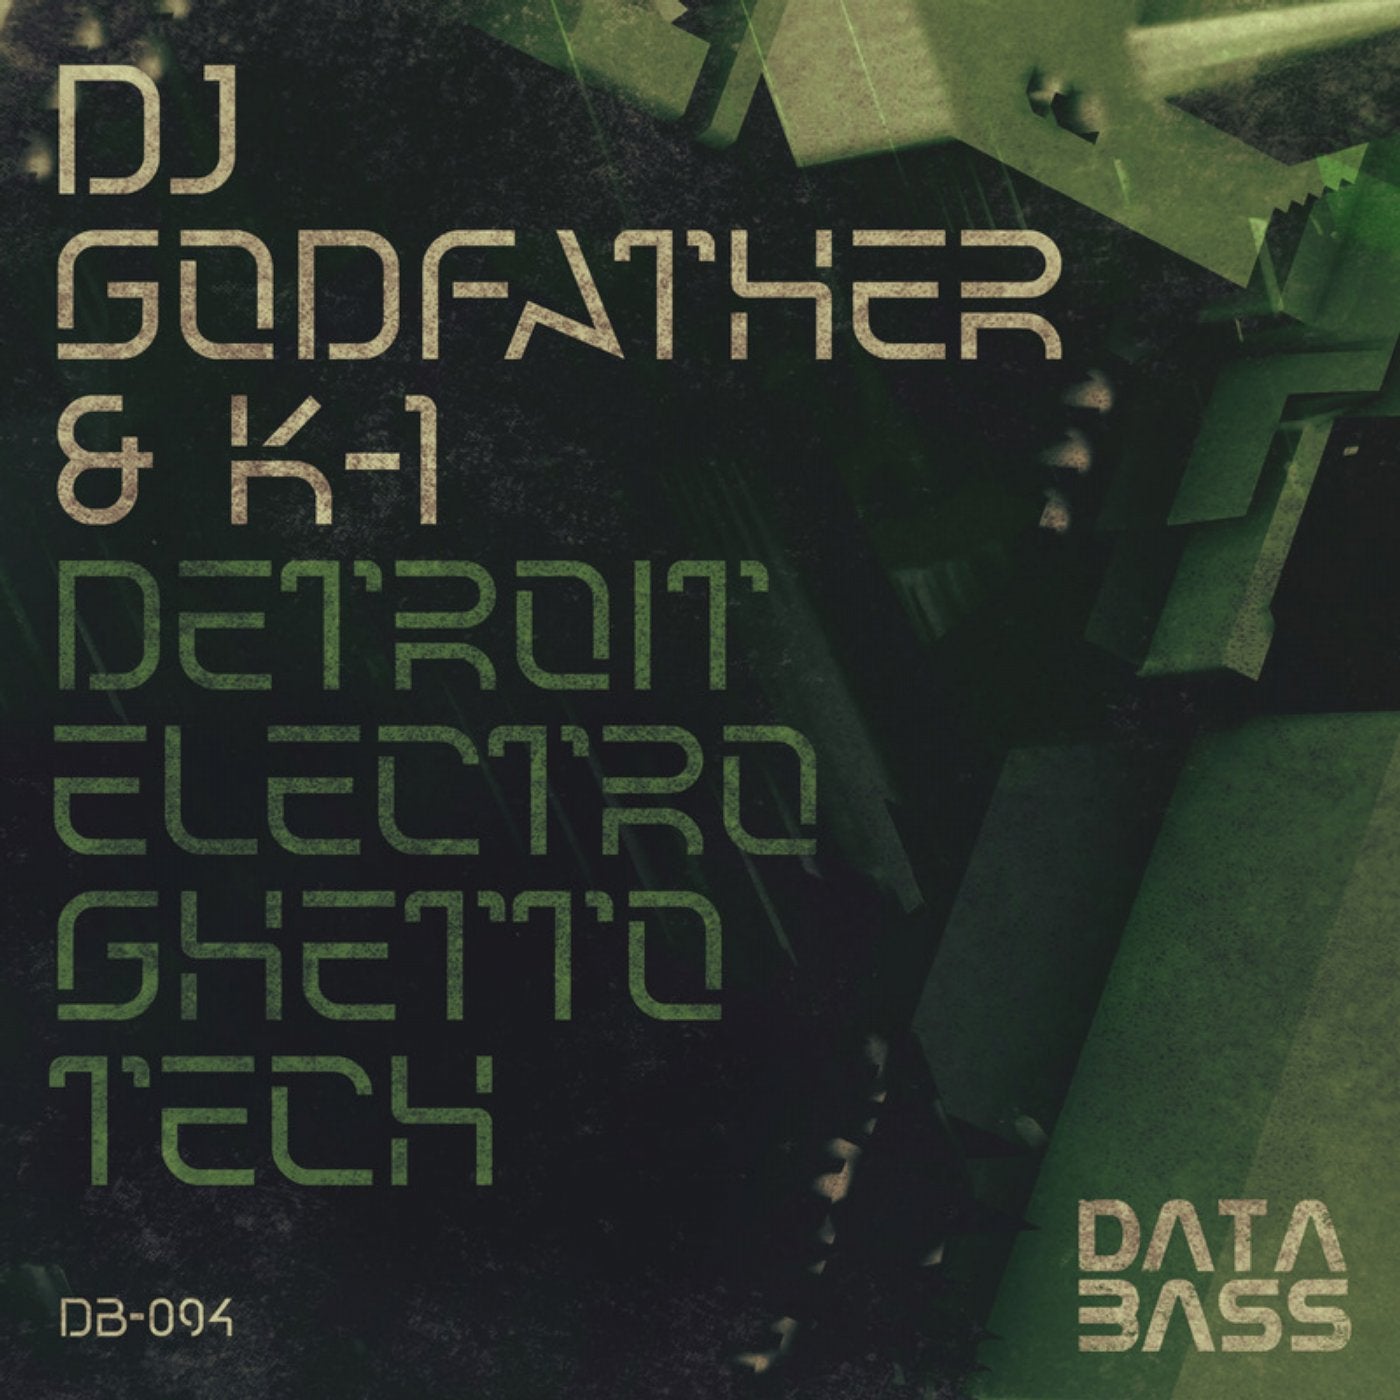 Download Detroit Electro Ghetto Tech on Electrobuzz